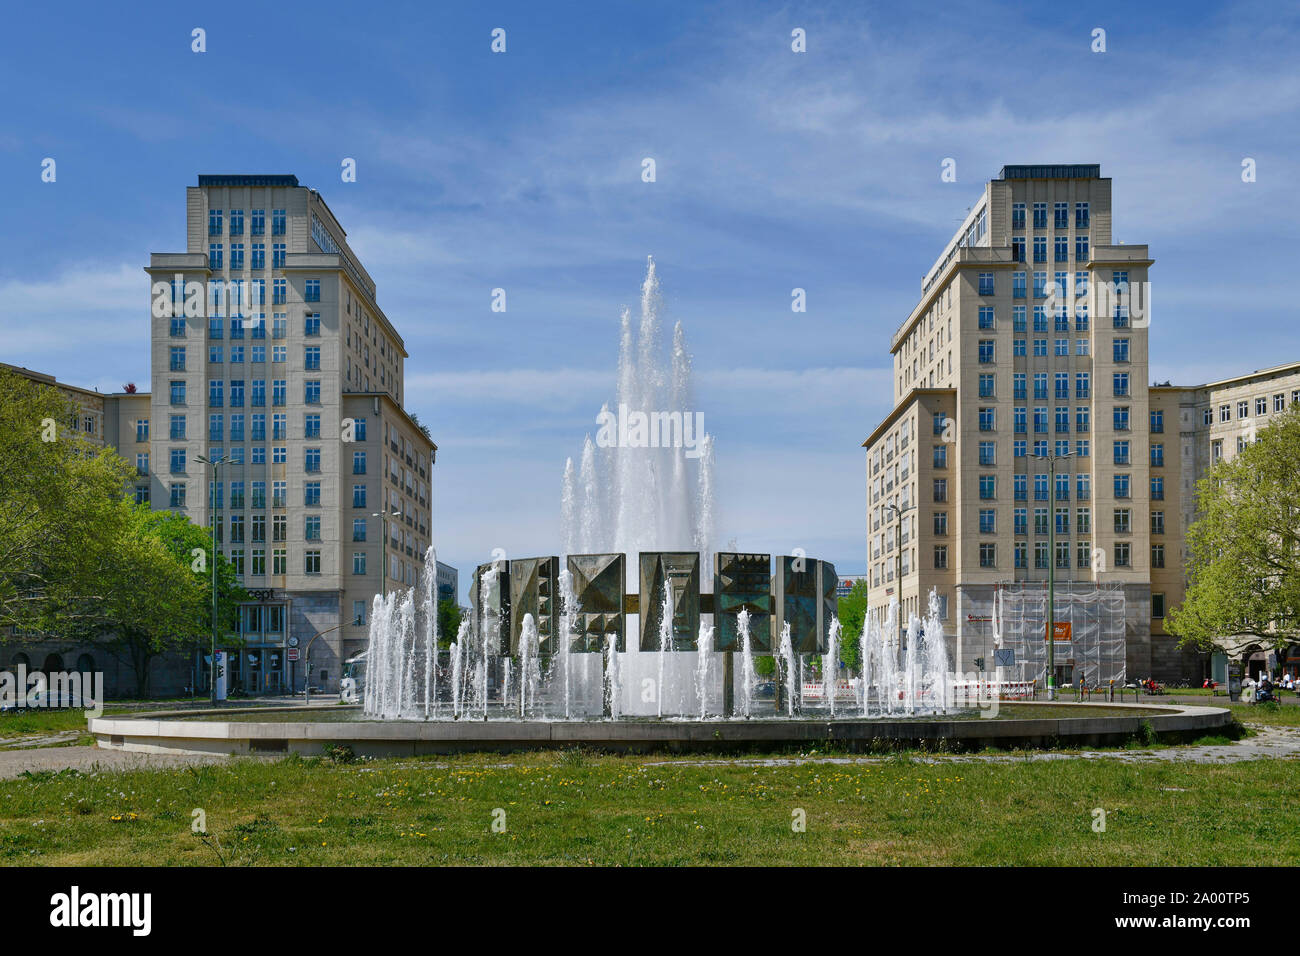 Brunnen, Strausberger Platz, Friedrichshain, Berlin, Deutschland Banque D'Images